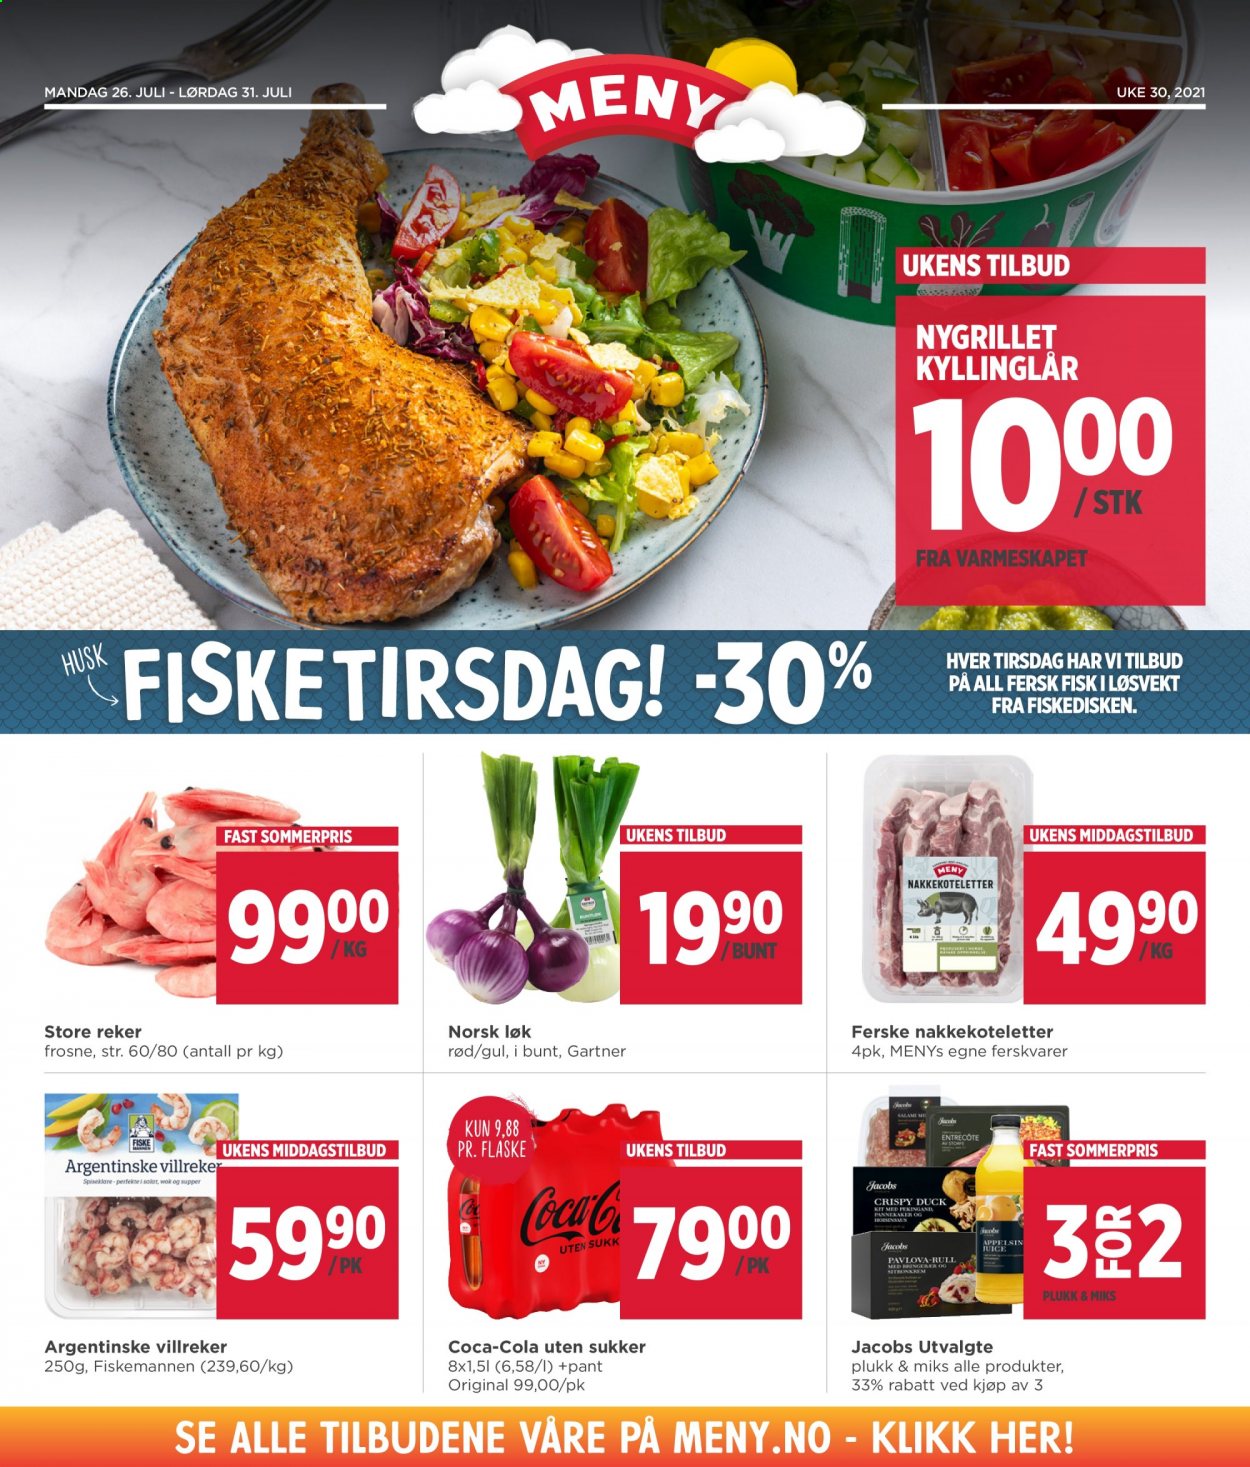 thumbnail - Kundeavis MENY - 26.7.2021 - 31.7.2021 - Produkter fra tilbudsaviser - kyllinglår, kyllingkjøtt, nakkekoteletter, løk, reker, fisk, Coca-Cola. Side 2.